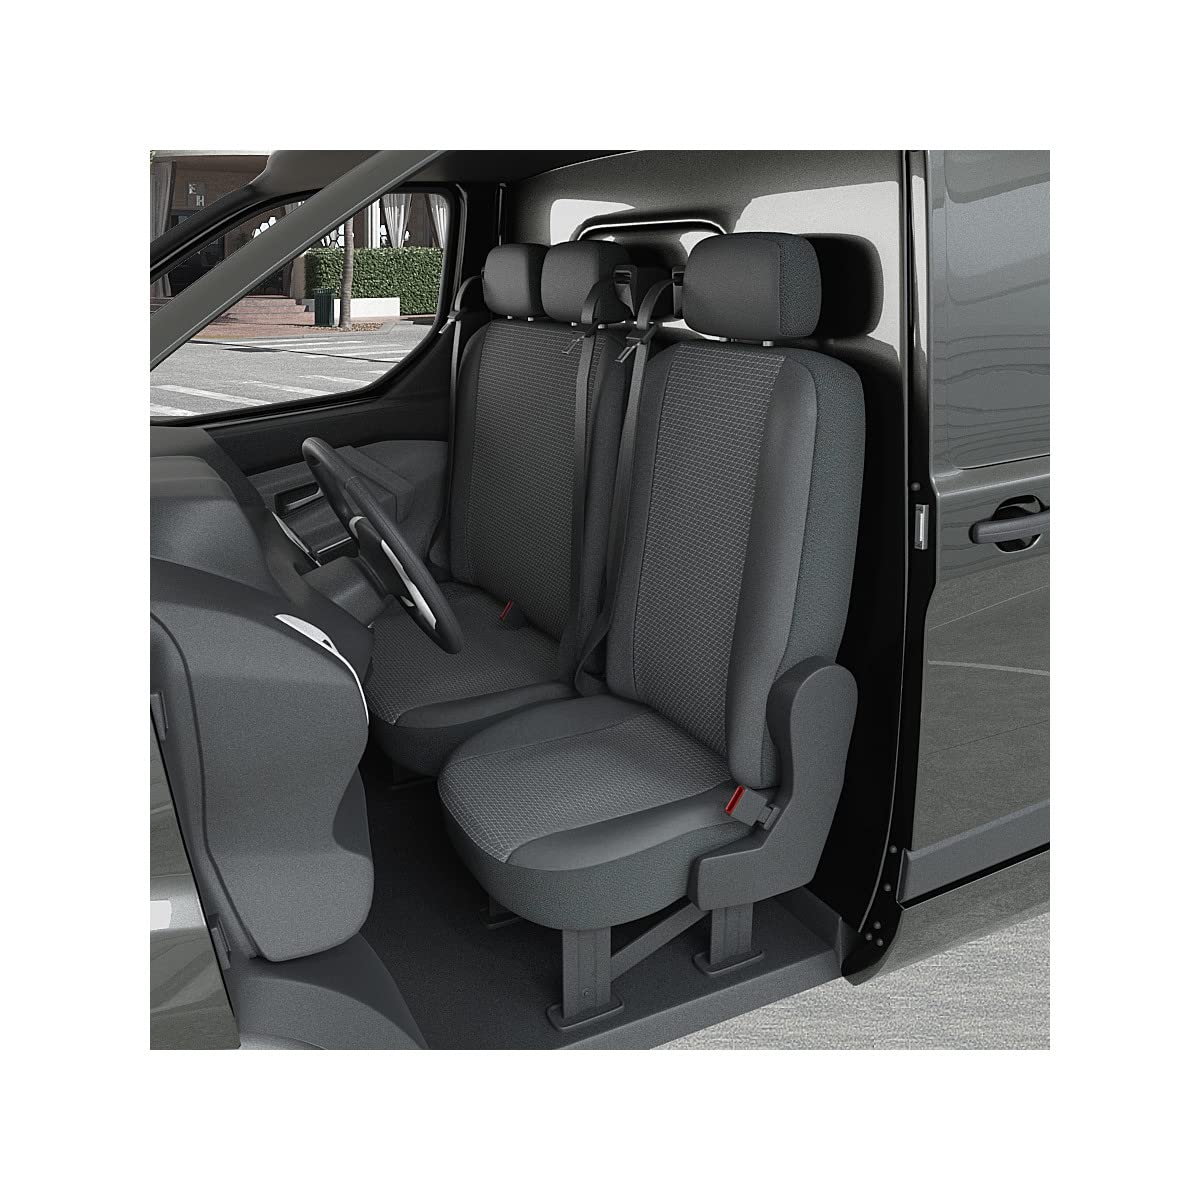 DBS 1013173 Sitzbezug für Auto/Nutzfahrzeuge, Kunstleder, schnelle Montage, kompatibel mit Airbag-Isofix-1013173 von DBS